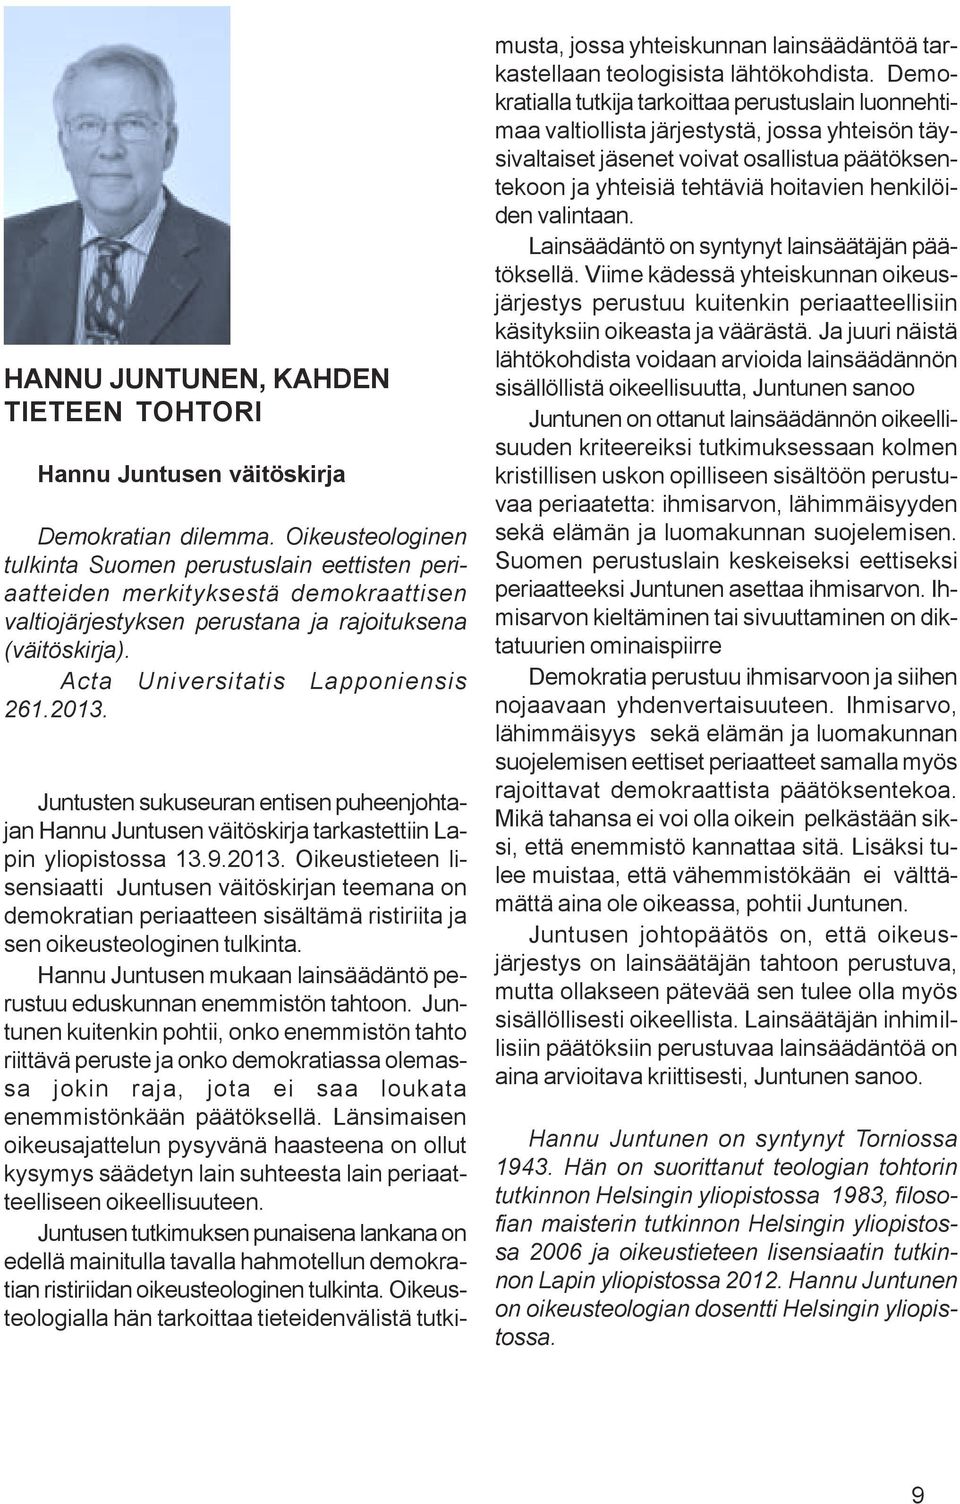 Juntusten sukuseuran entisen puheenjohtajan Hannu Juntusen väitöskirja tarkastettiin Lapin yliopistossa 13.9.2013.